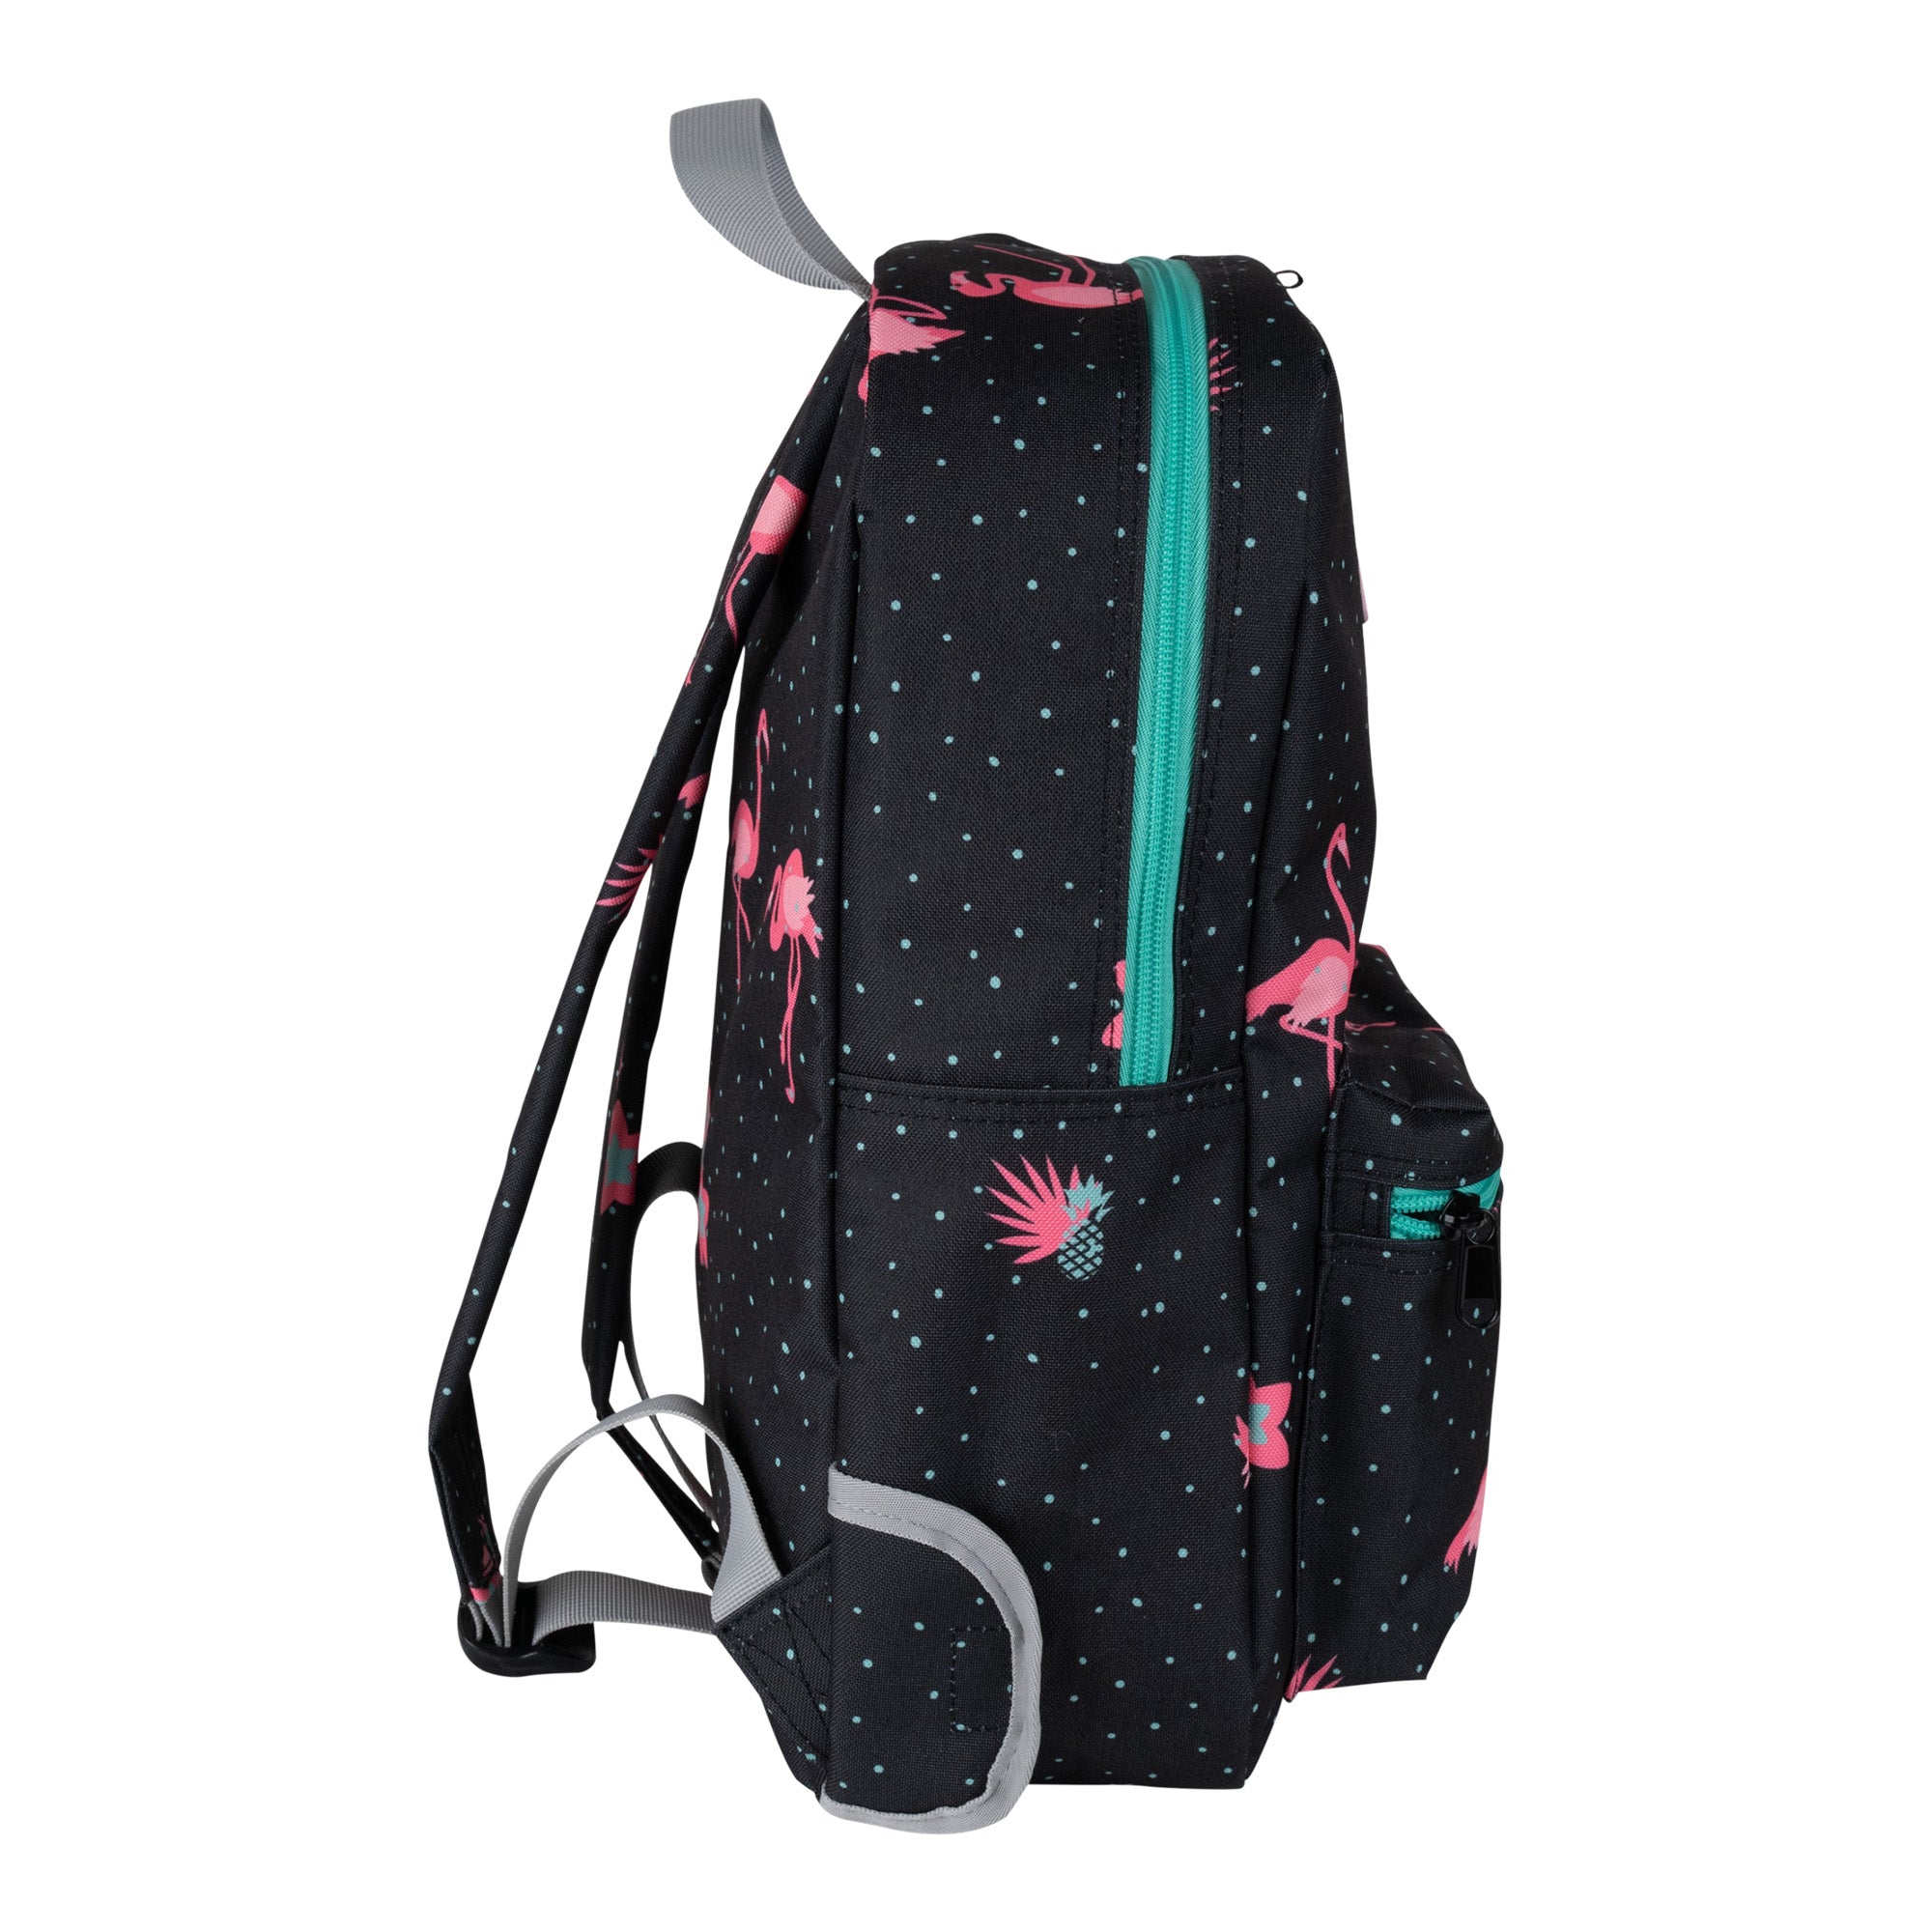 Brabo Storm Flamingo Backpack 23'24